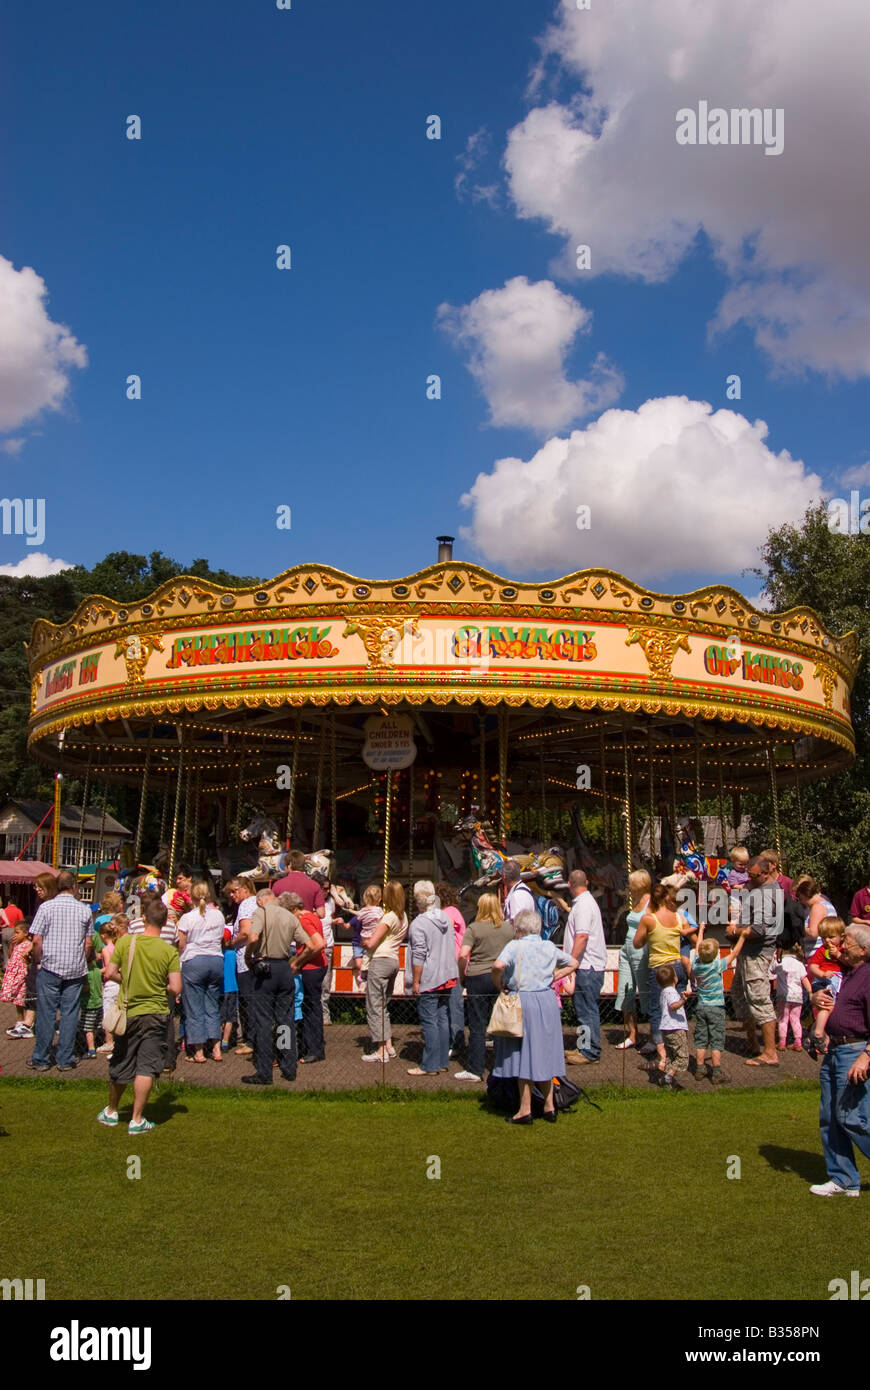 Carousel At Bressingham Stock Photo